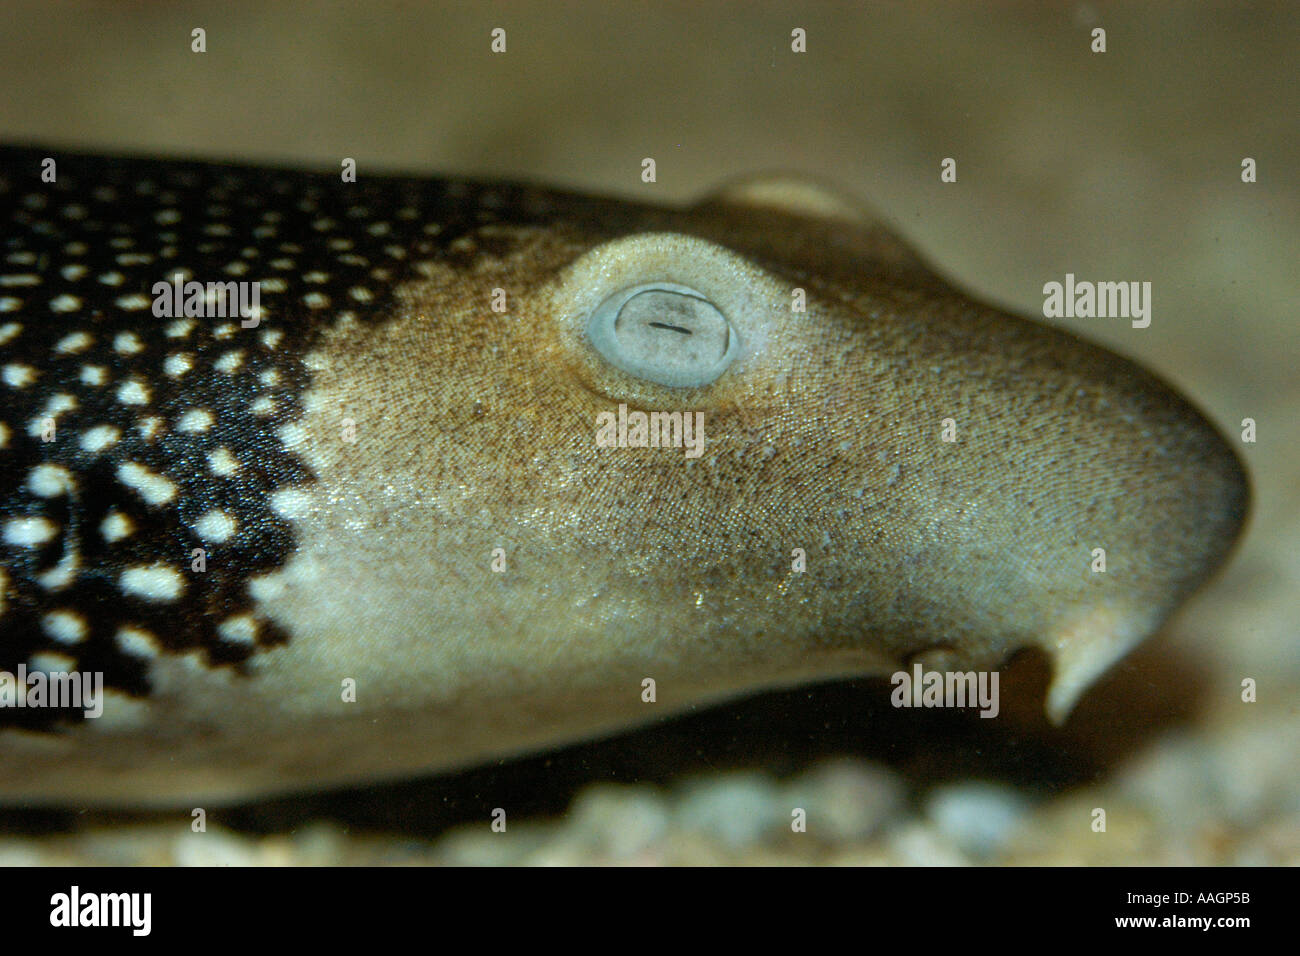 Carpet shark | Habitat, Species, & Facts | Britannica